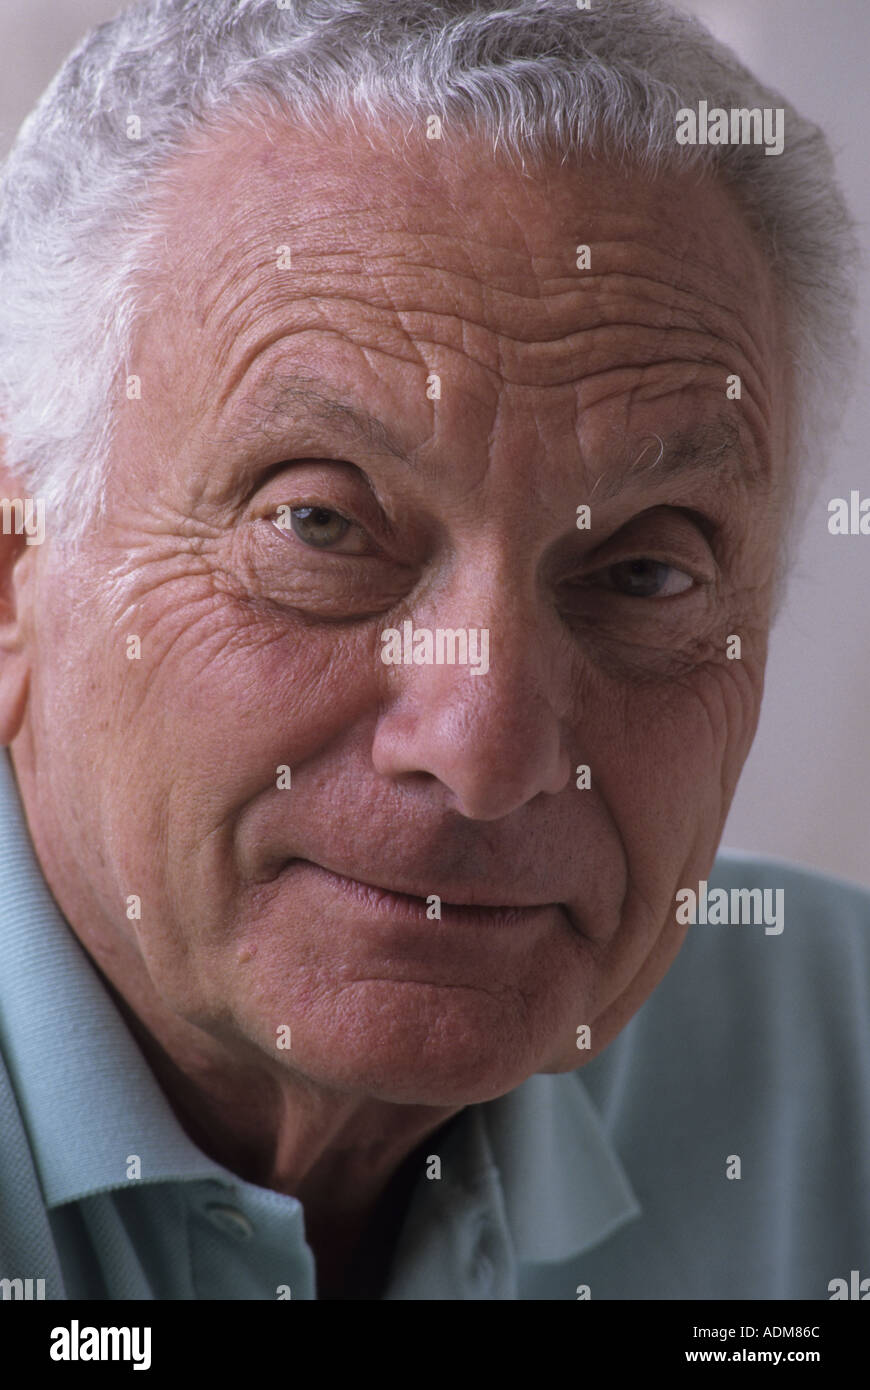 Close Up retrato de un hombre superior en sus 70 70s 73-75 años honesta expresión facial expresivo retrato arrugas sano cabello gris blanco Foto de stock